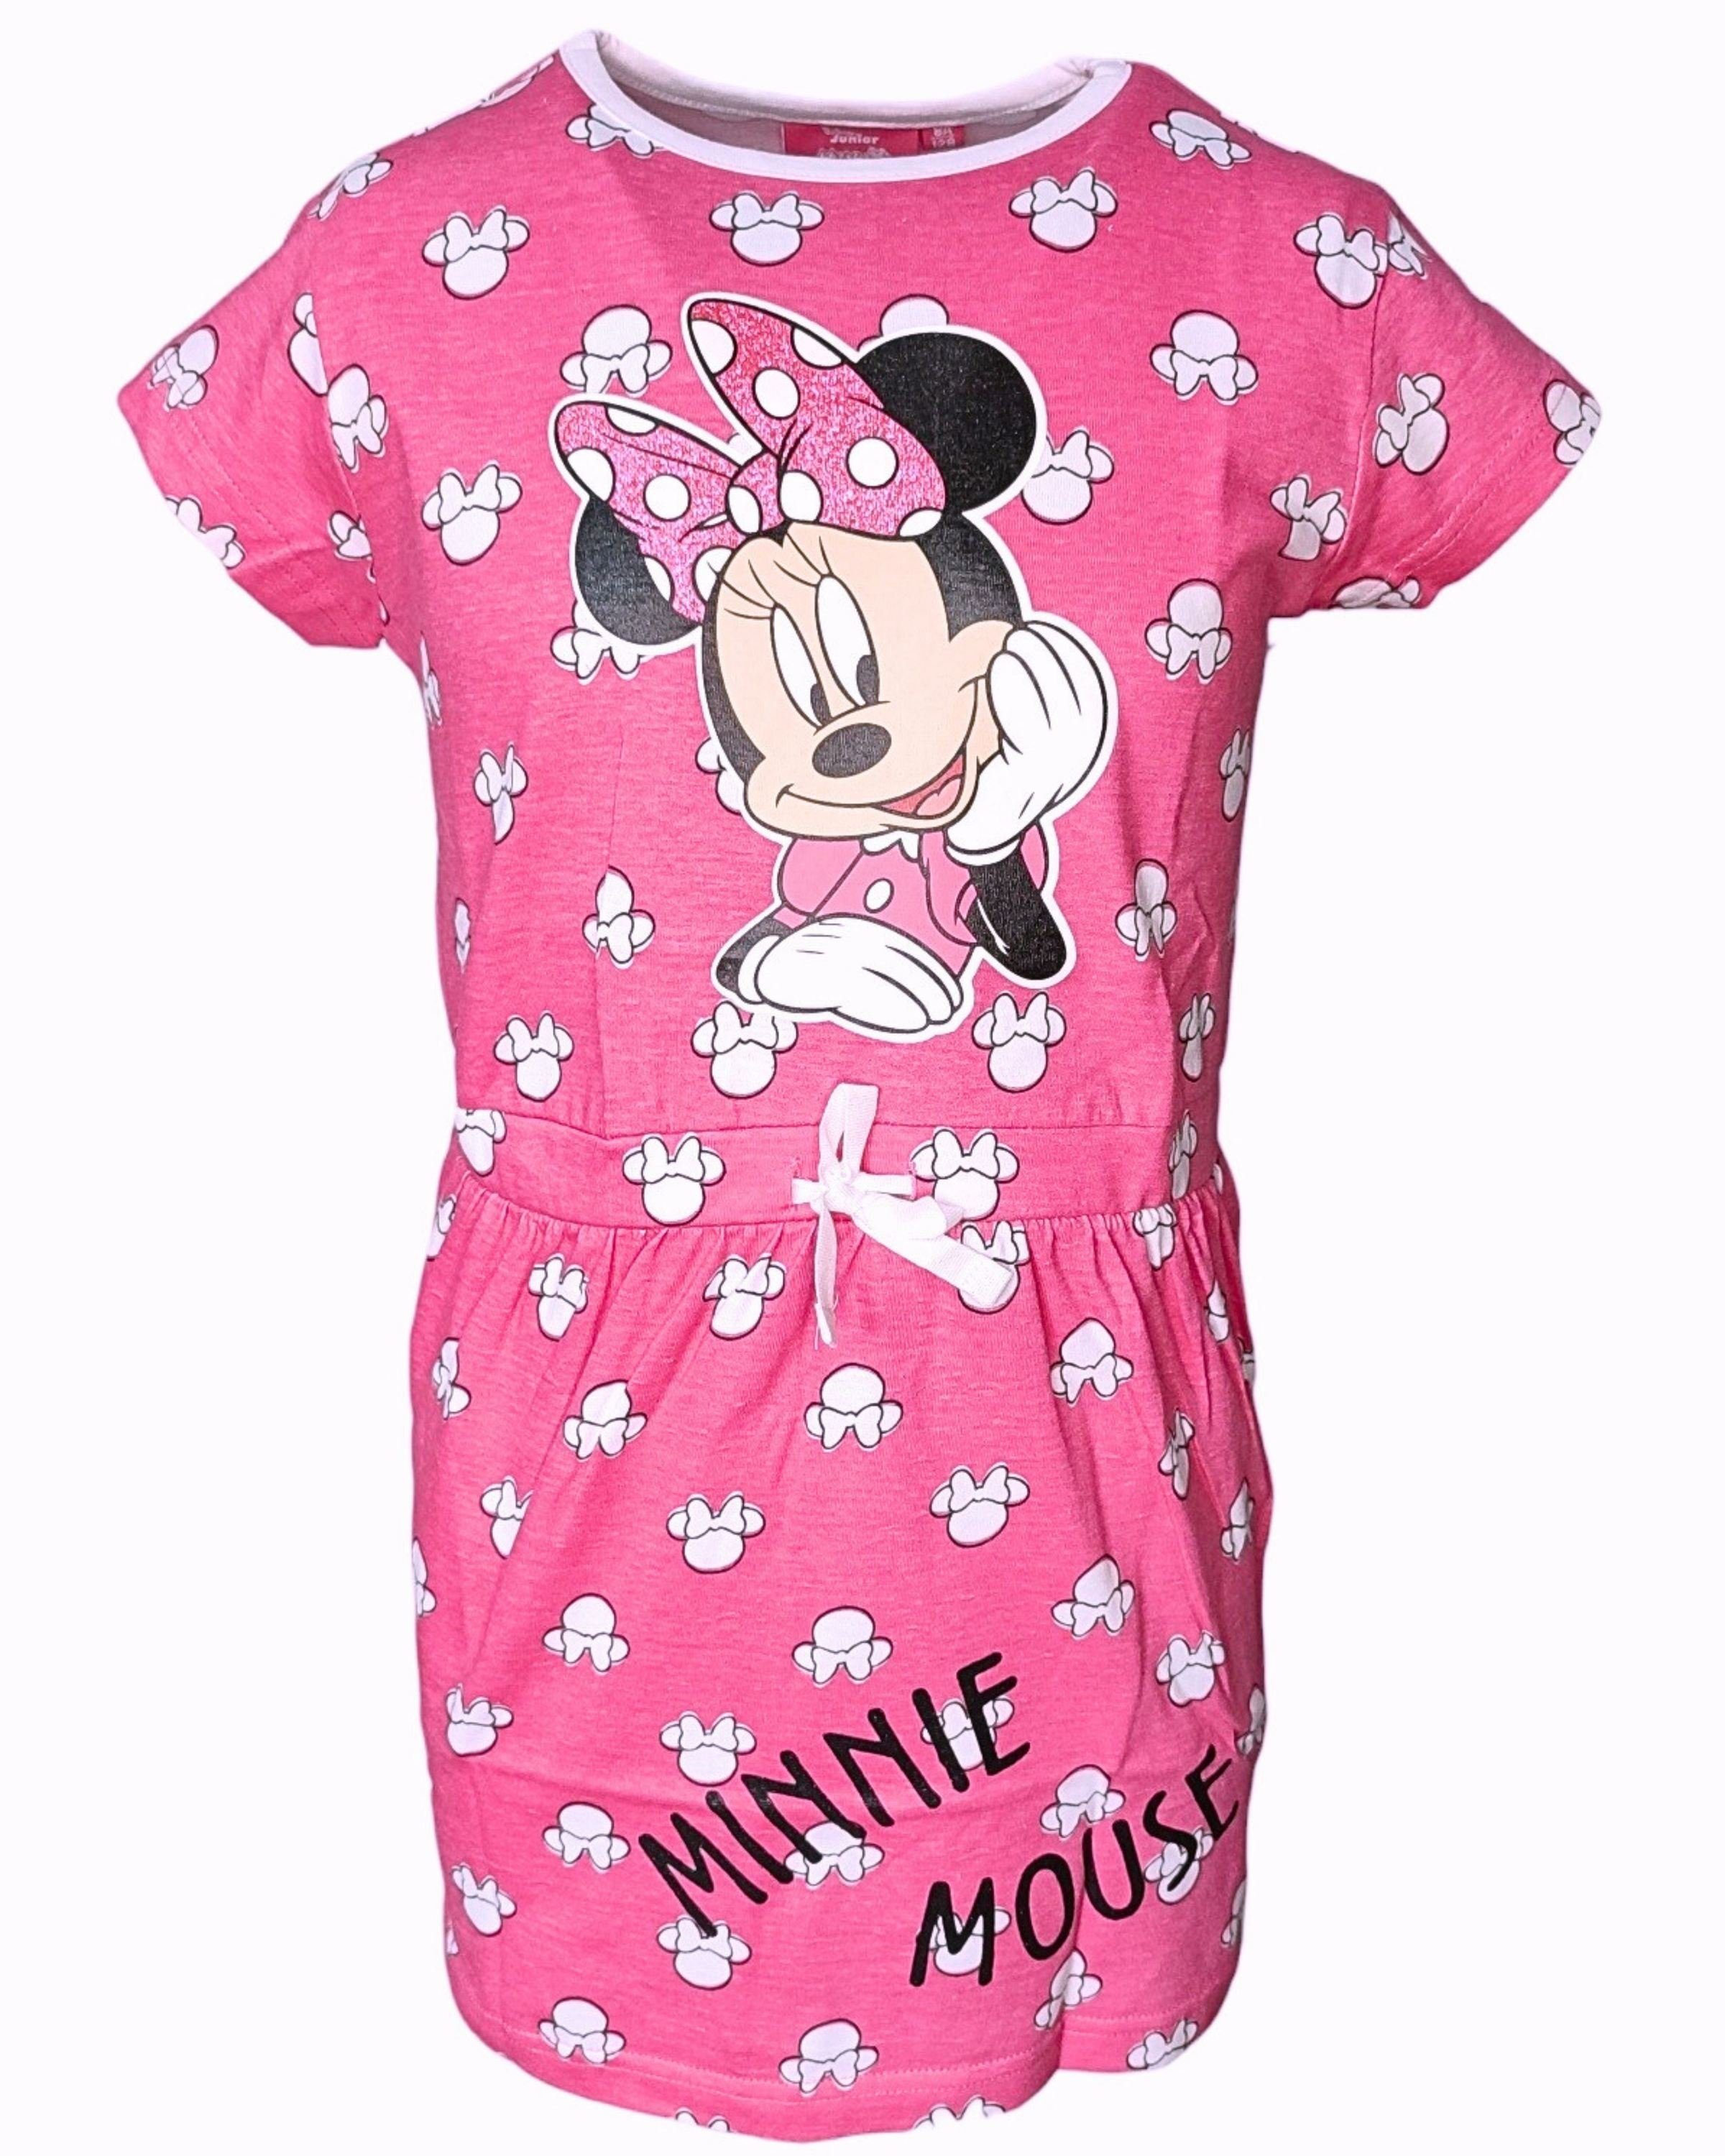 Disney Minnie Mouse Sommerkleid Minnie Maus Jerseykleid mit Glitzer für Mädchen Gr. 98-128 cm